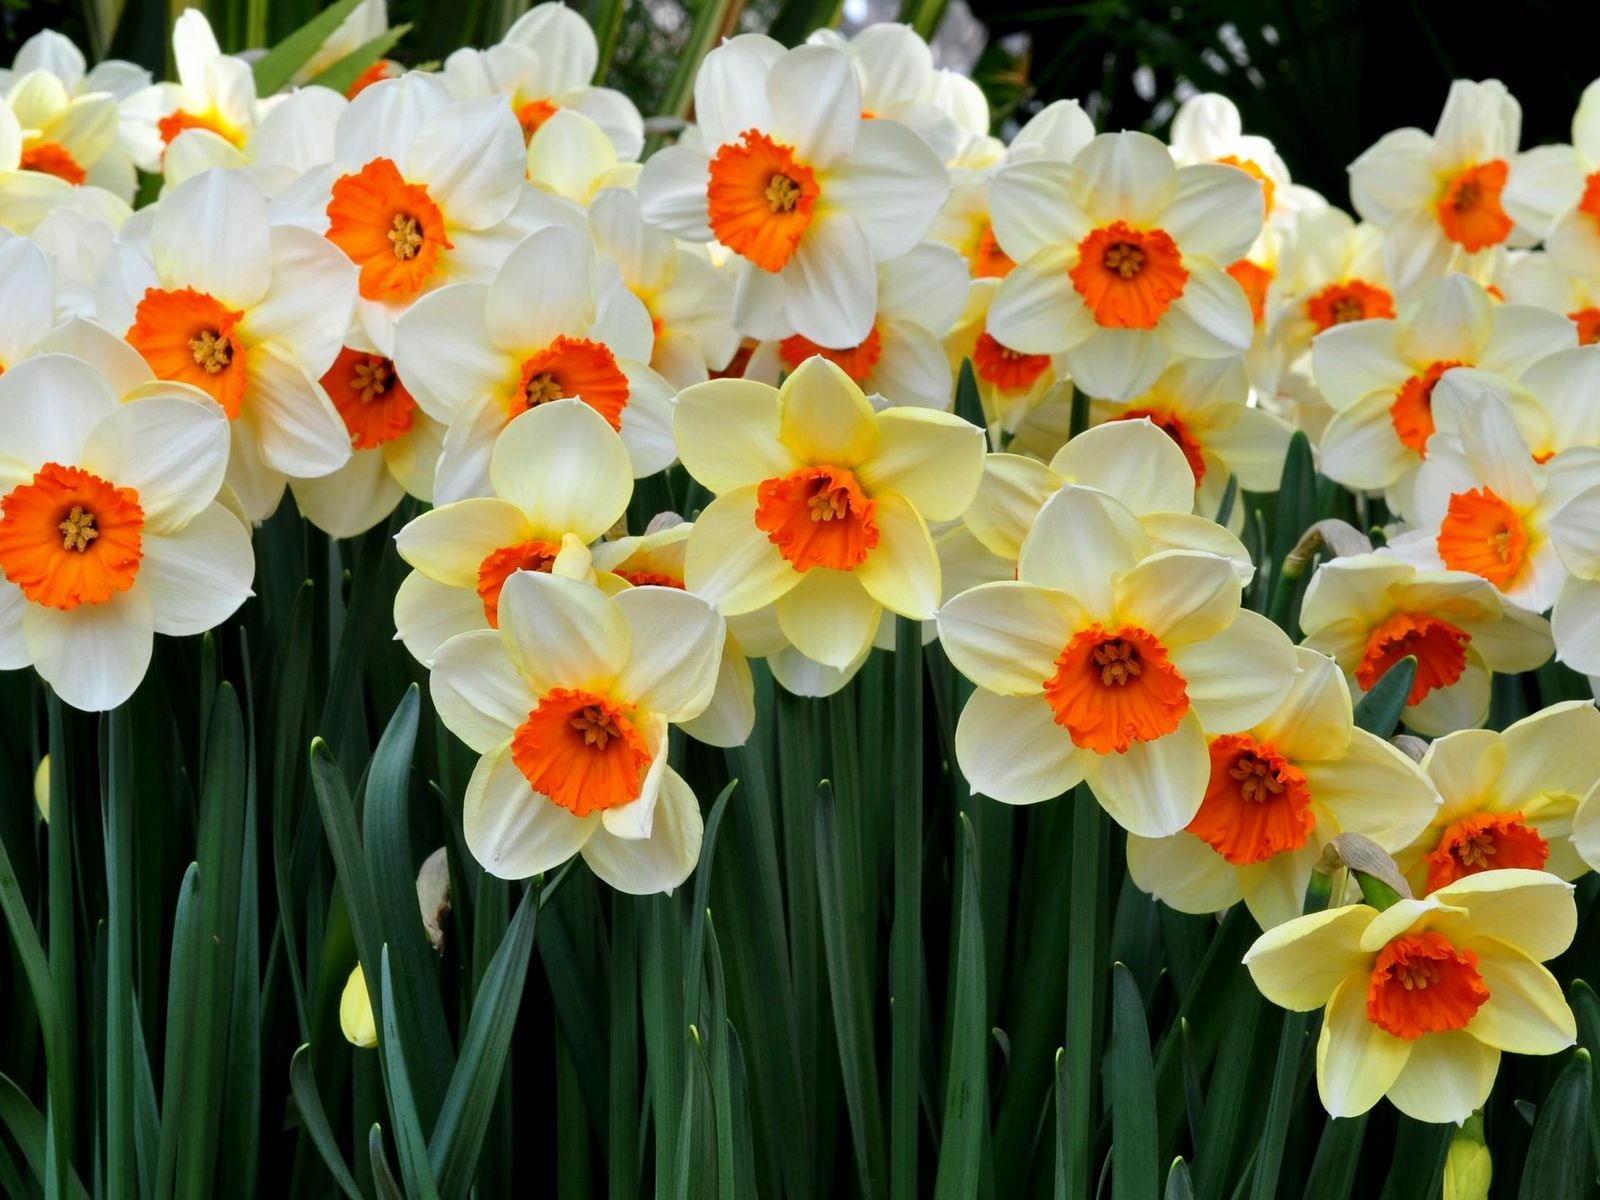 1600x1200 нарциссы, цветы, клумба, весна, настроение обои стандарт 4:3.